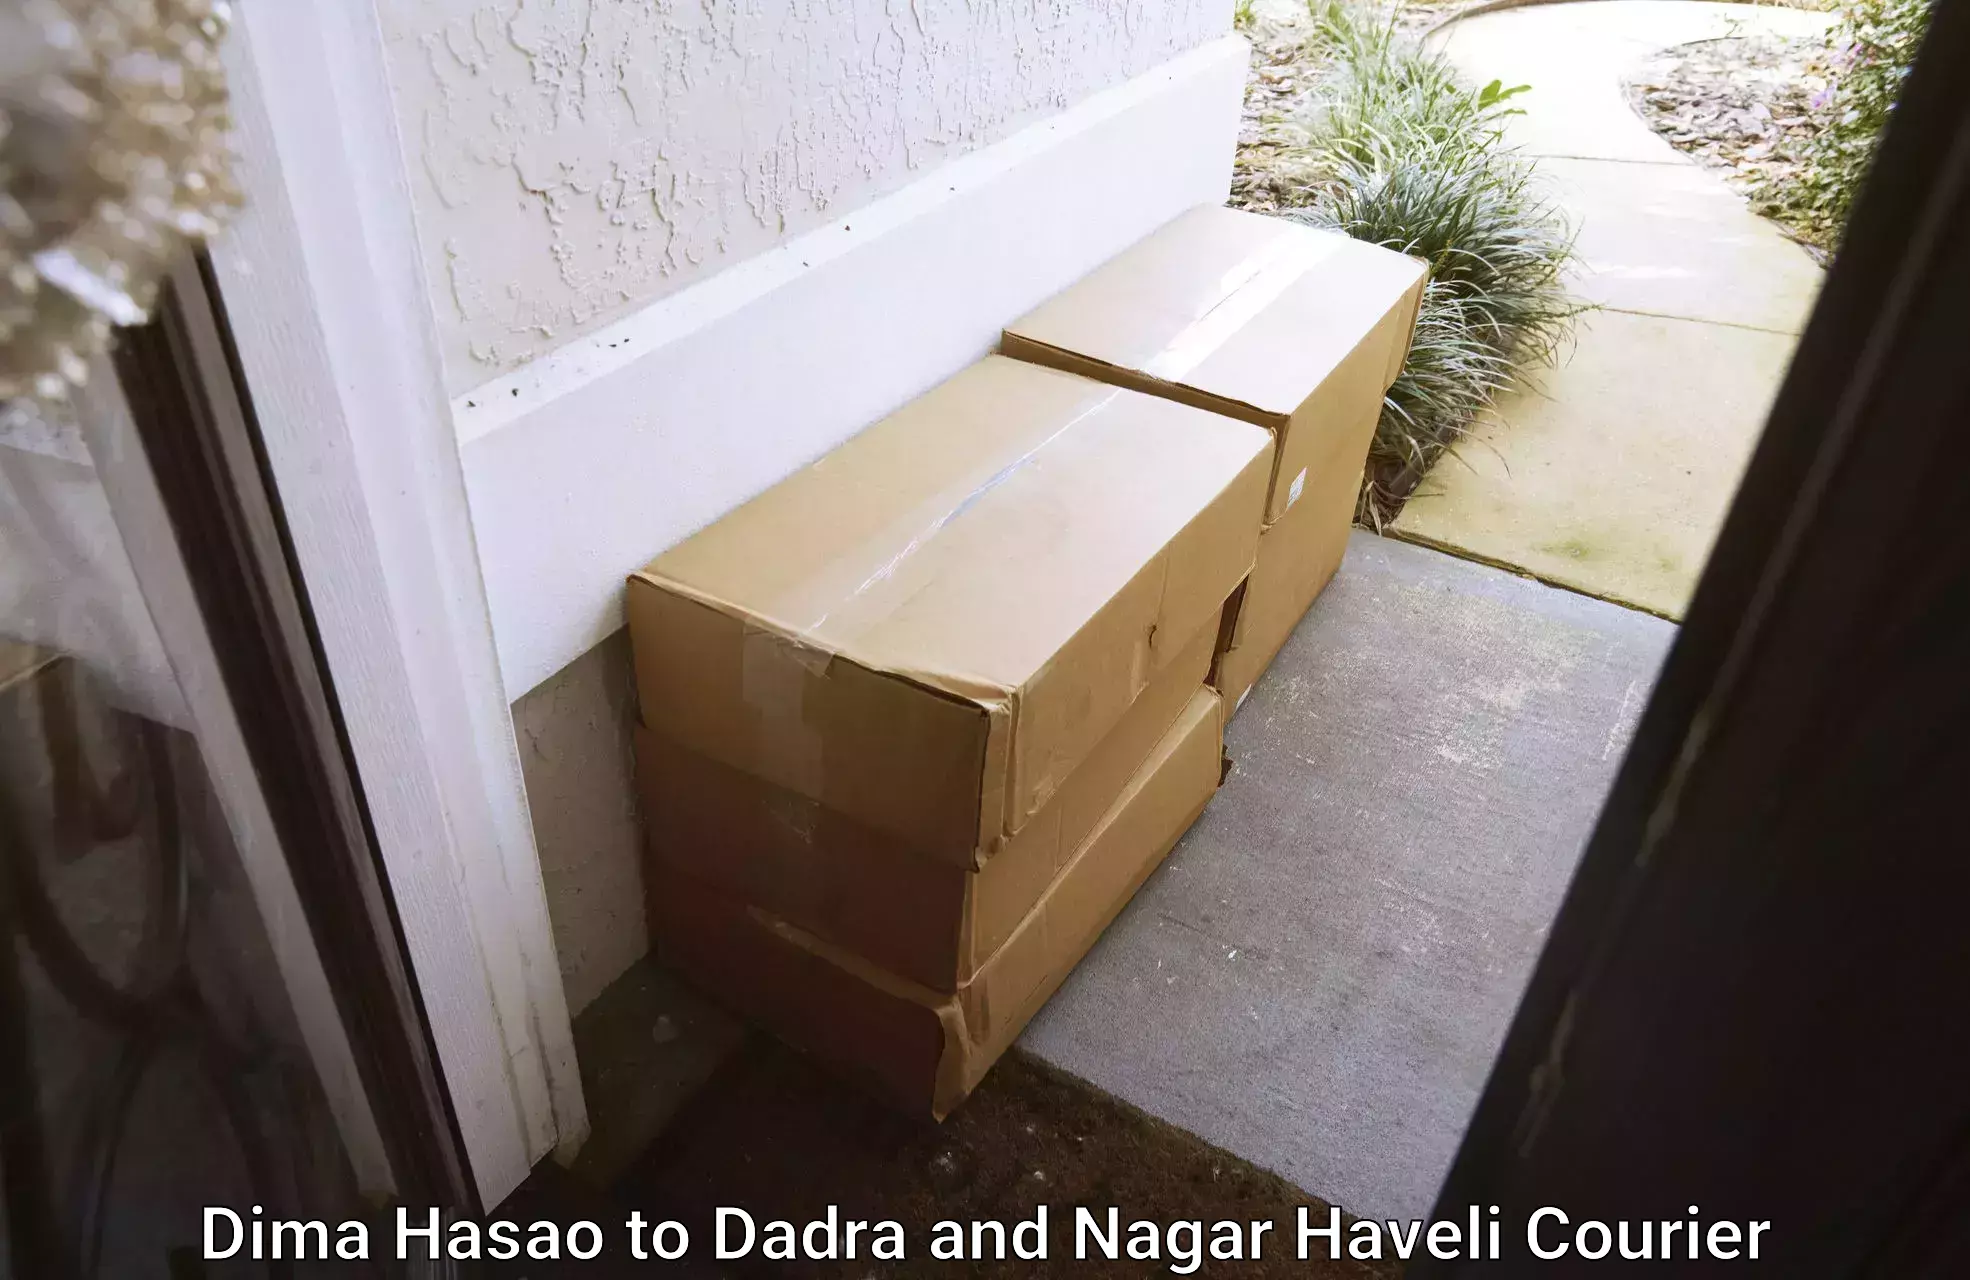 Cargo delivery service Dima Hasao to Silvassa